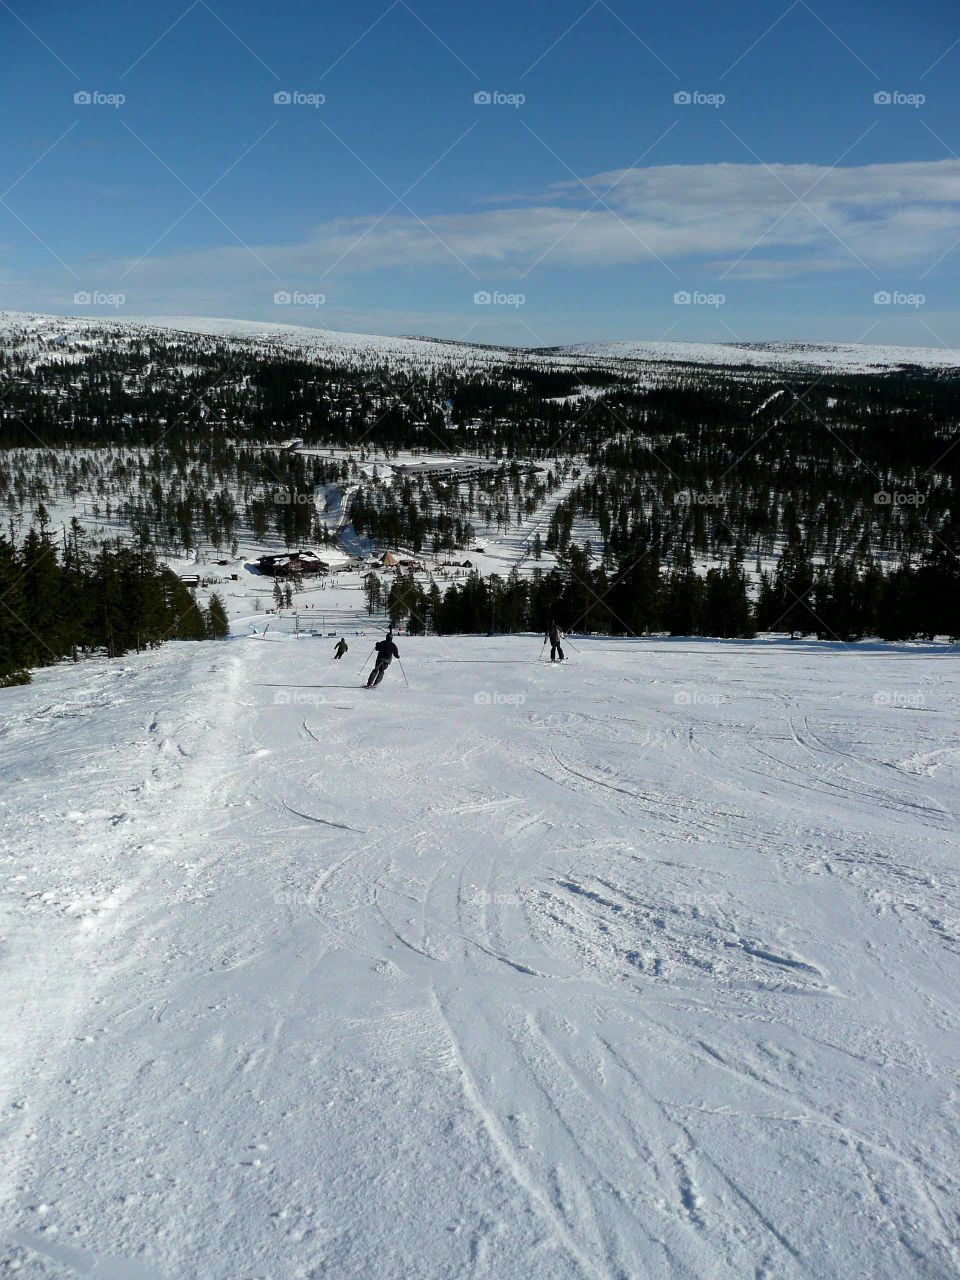 in the ski slope